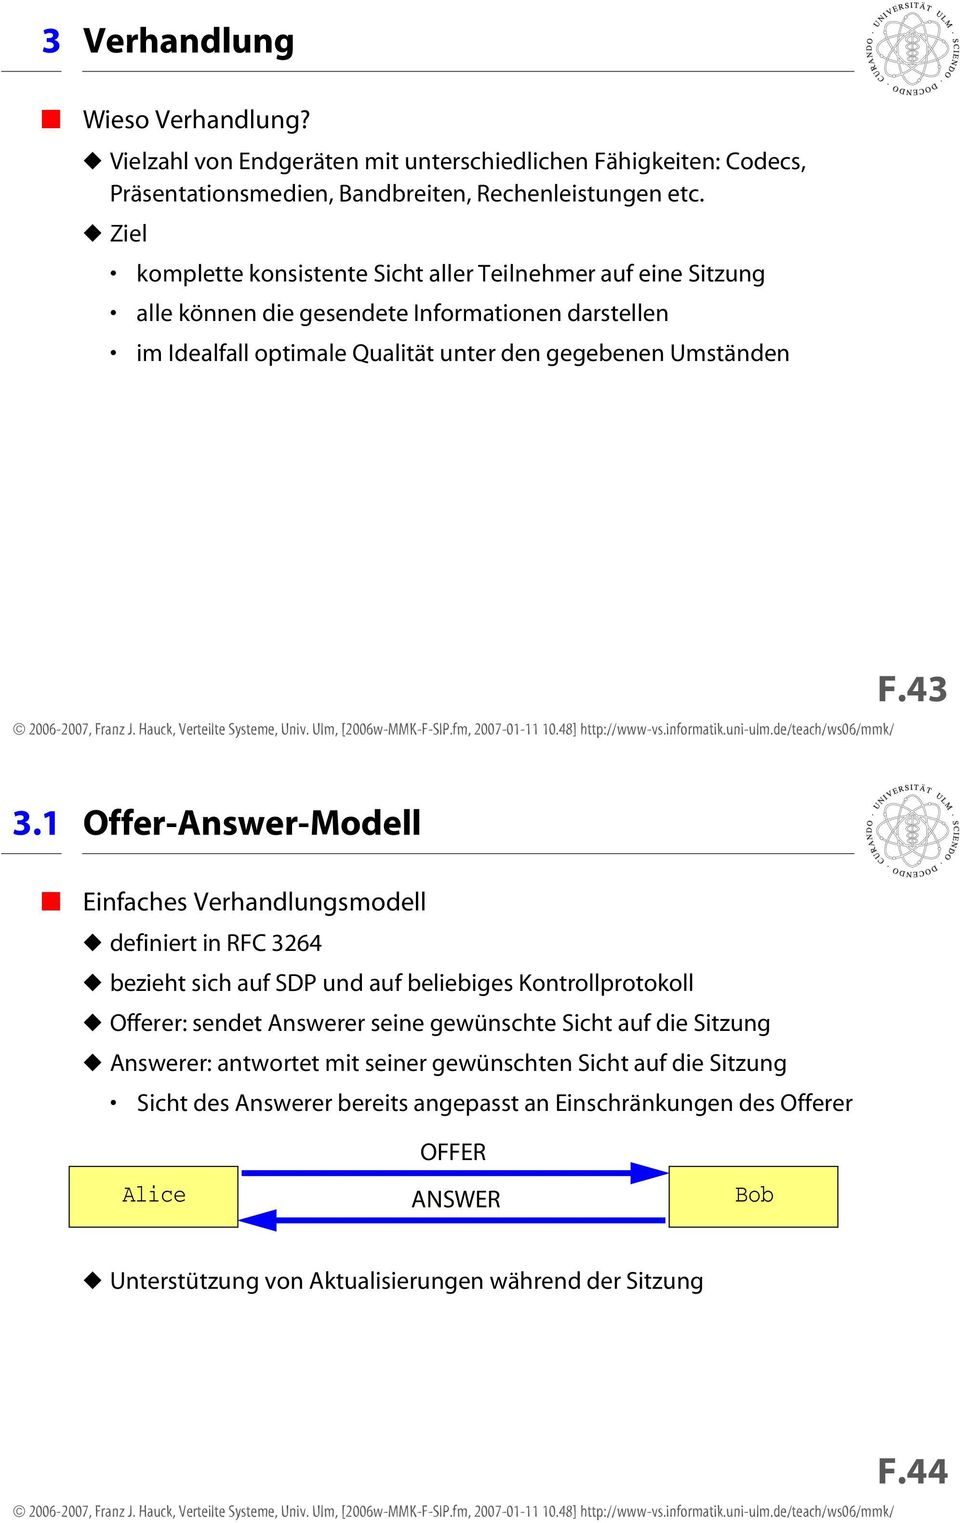 1 Offer-Answer-Modell Einfaches Verhandlungsmodell definiert in RFC 3264 bezieht sich auf SDP und auf beliebiges Kontrollprotokoll Offerer: sendet Answerer seine gewünschte Sicht auf die